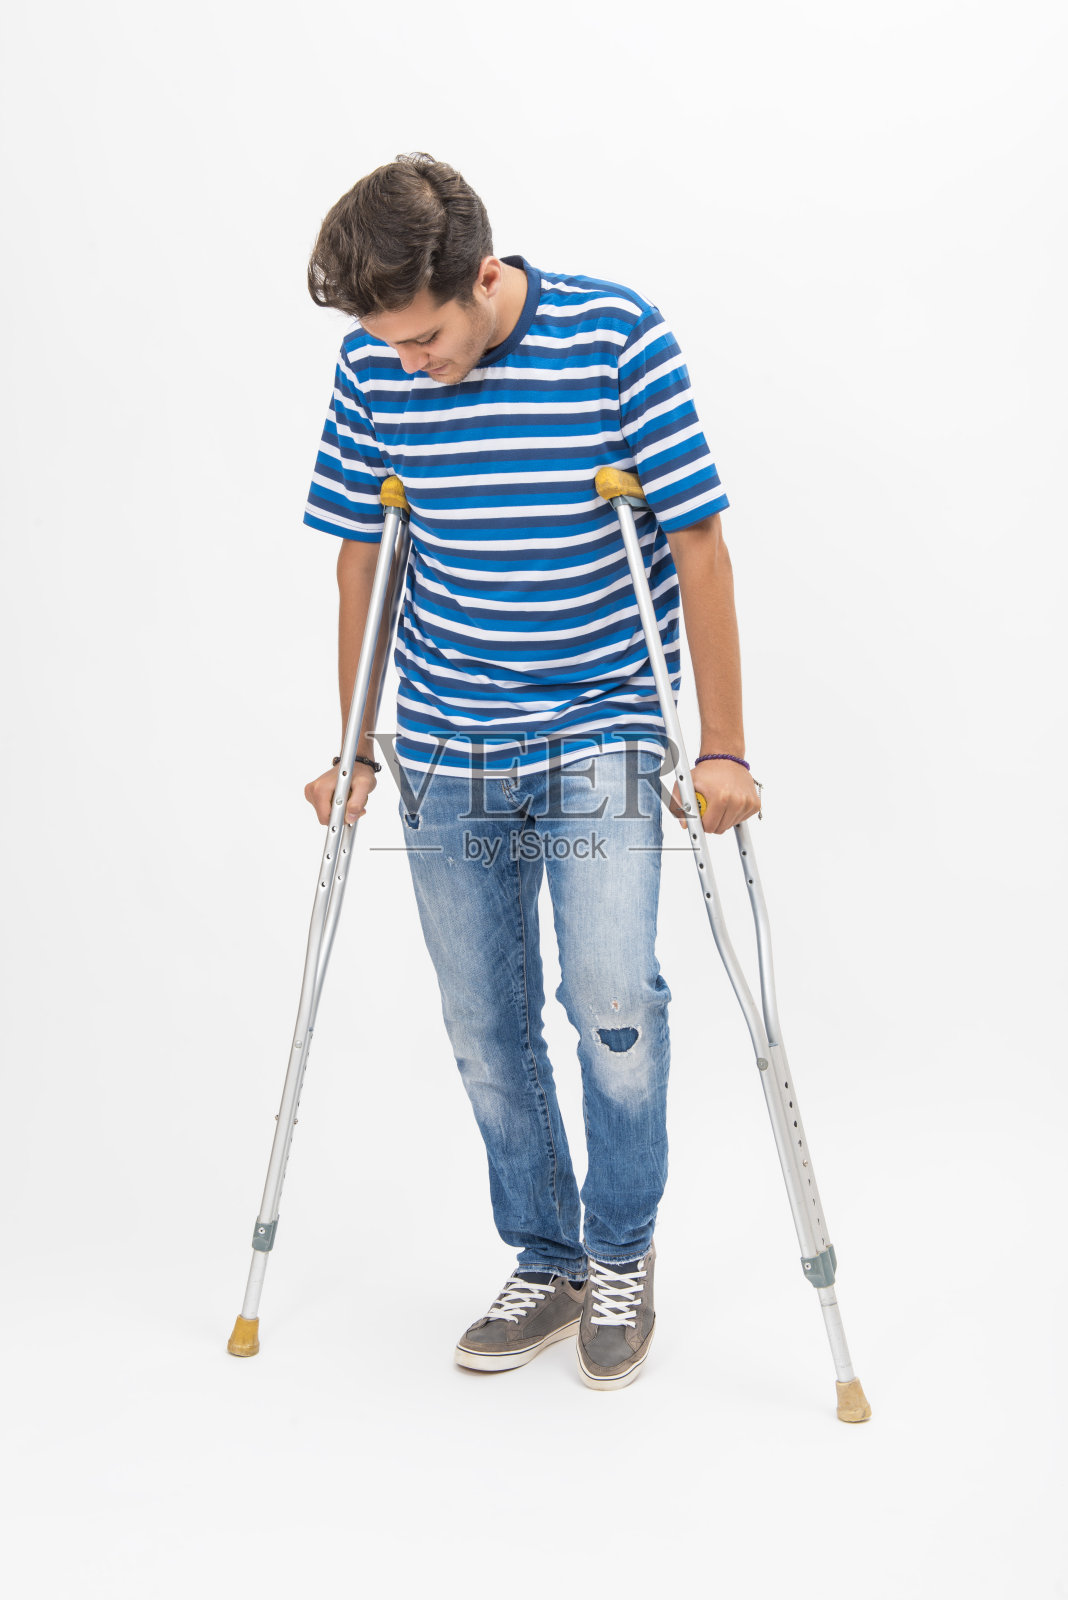 一个拄着拐杖试图在白色背景上行走的残疾青年照片摄影图片